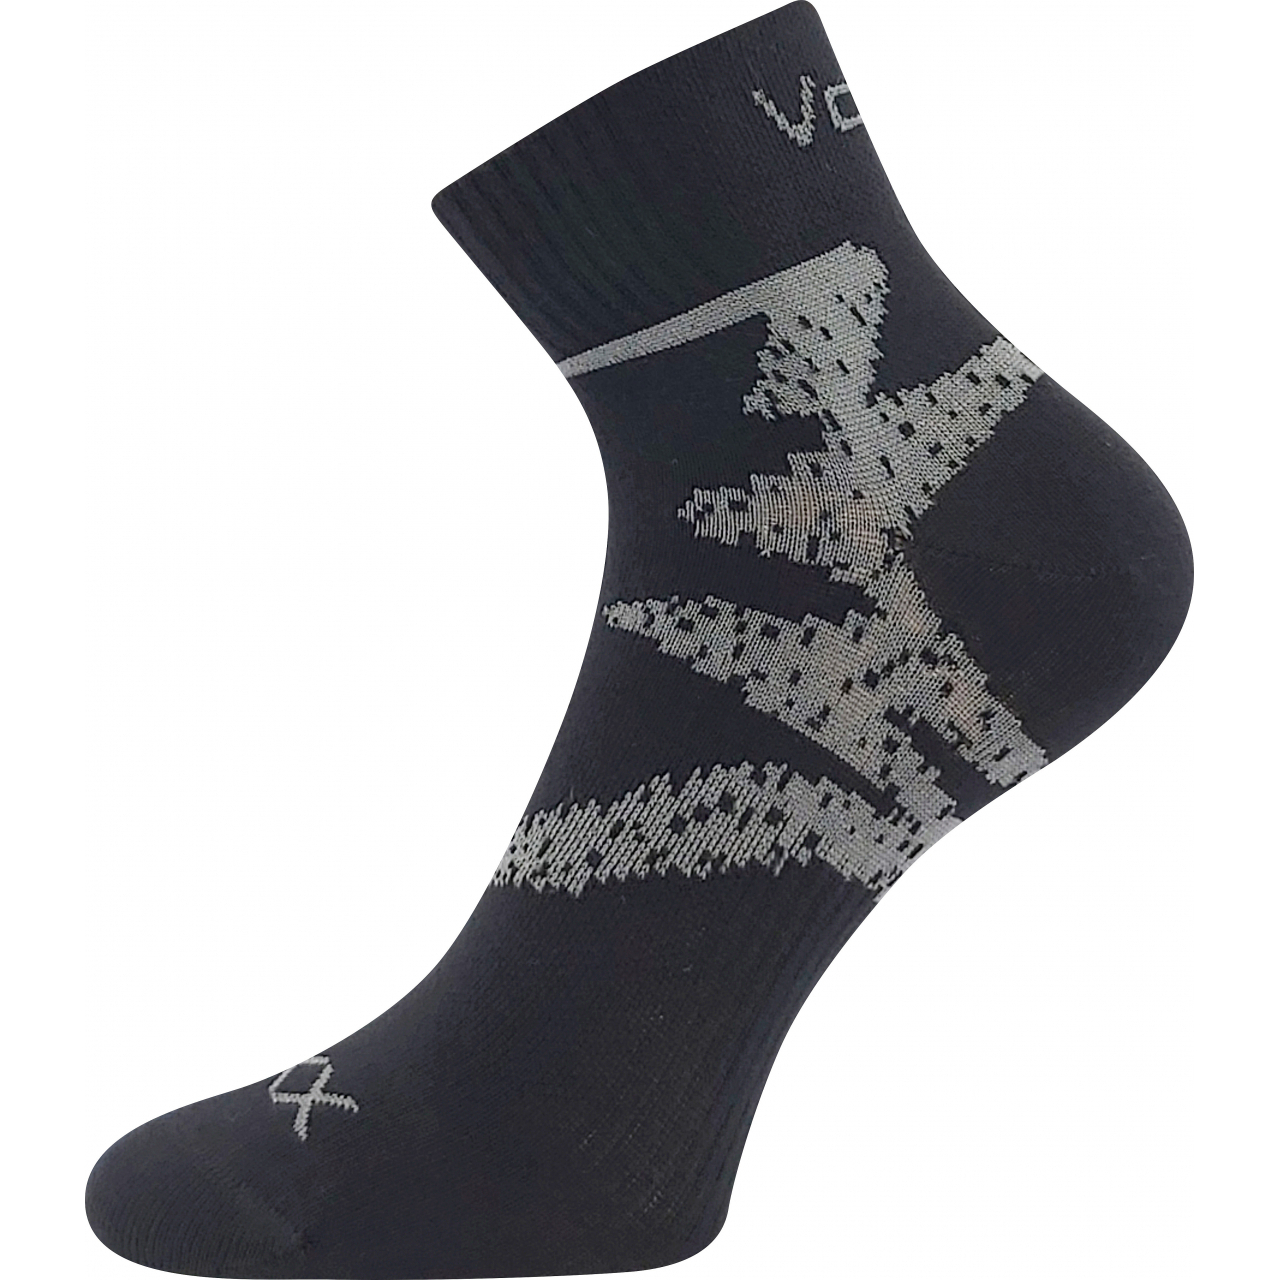 Ponožky sportovní unisex Voxx Franz 05 - černé-šedé, 43-46